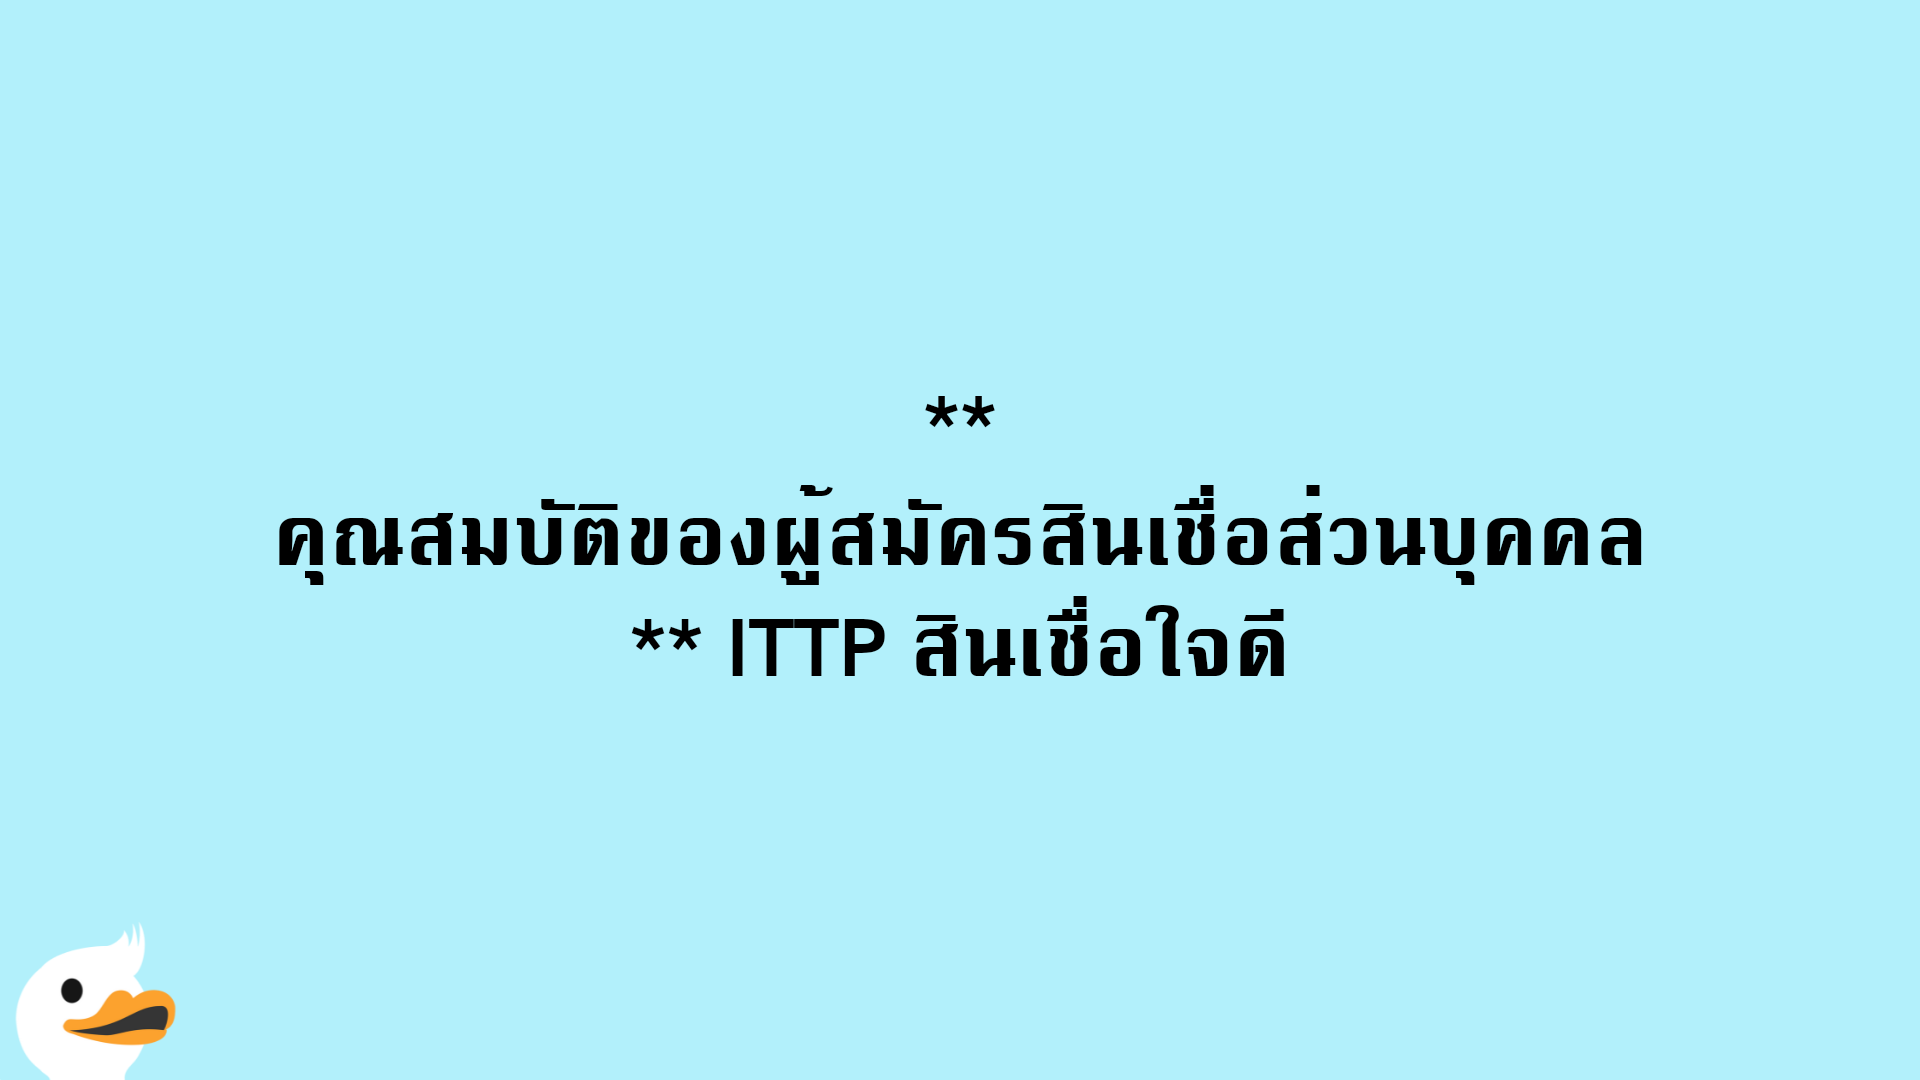 คุณสมบัติของผู้สมัครสินเชื่อส่วนบุคคล ITTP สินเชื่อใจดี